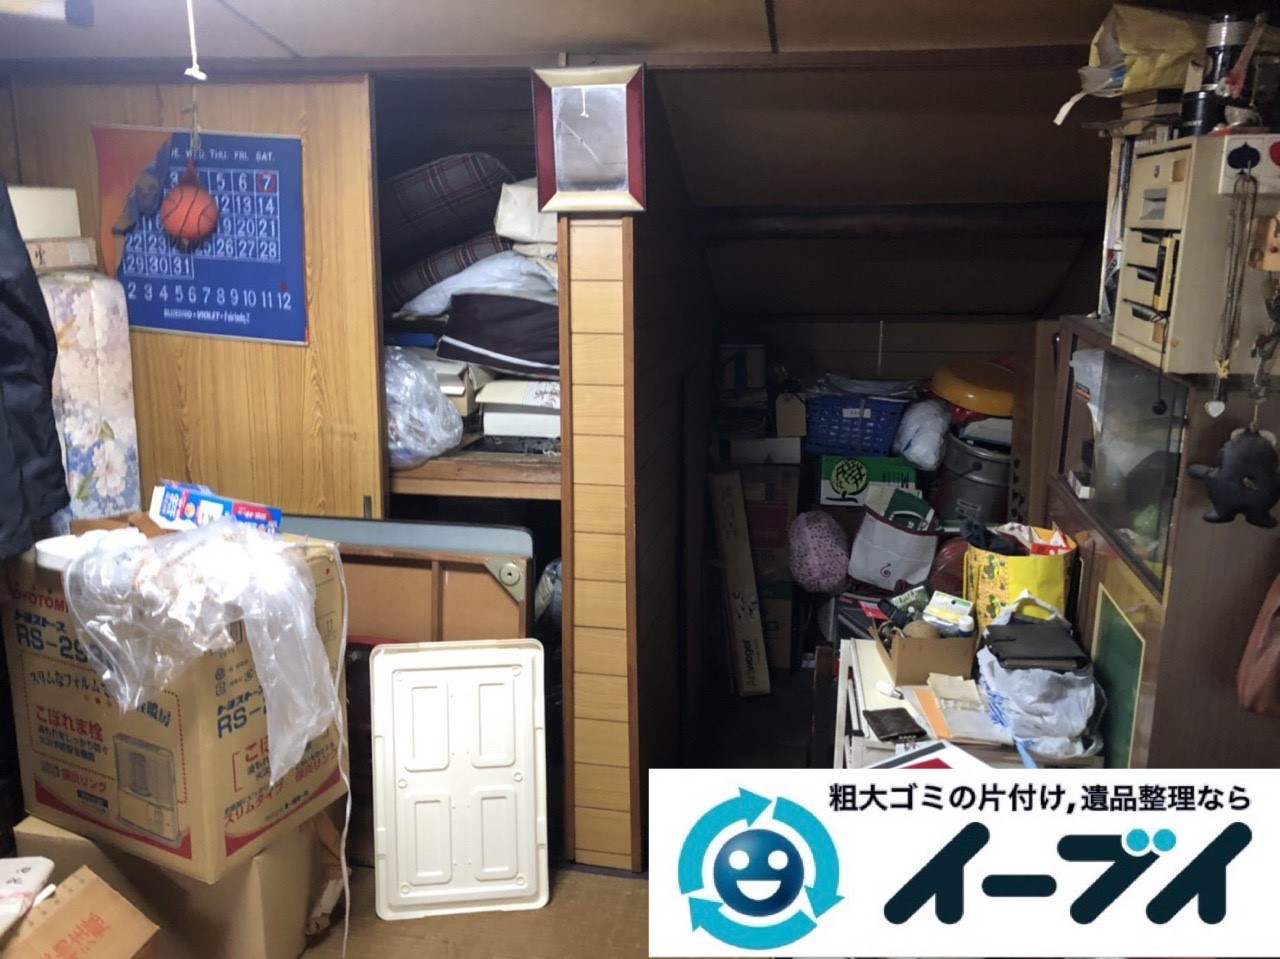 2019年5月26日大阪府箕面市で引越しに伴いお家の家財道具を全処分させていただきました。写真1